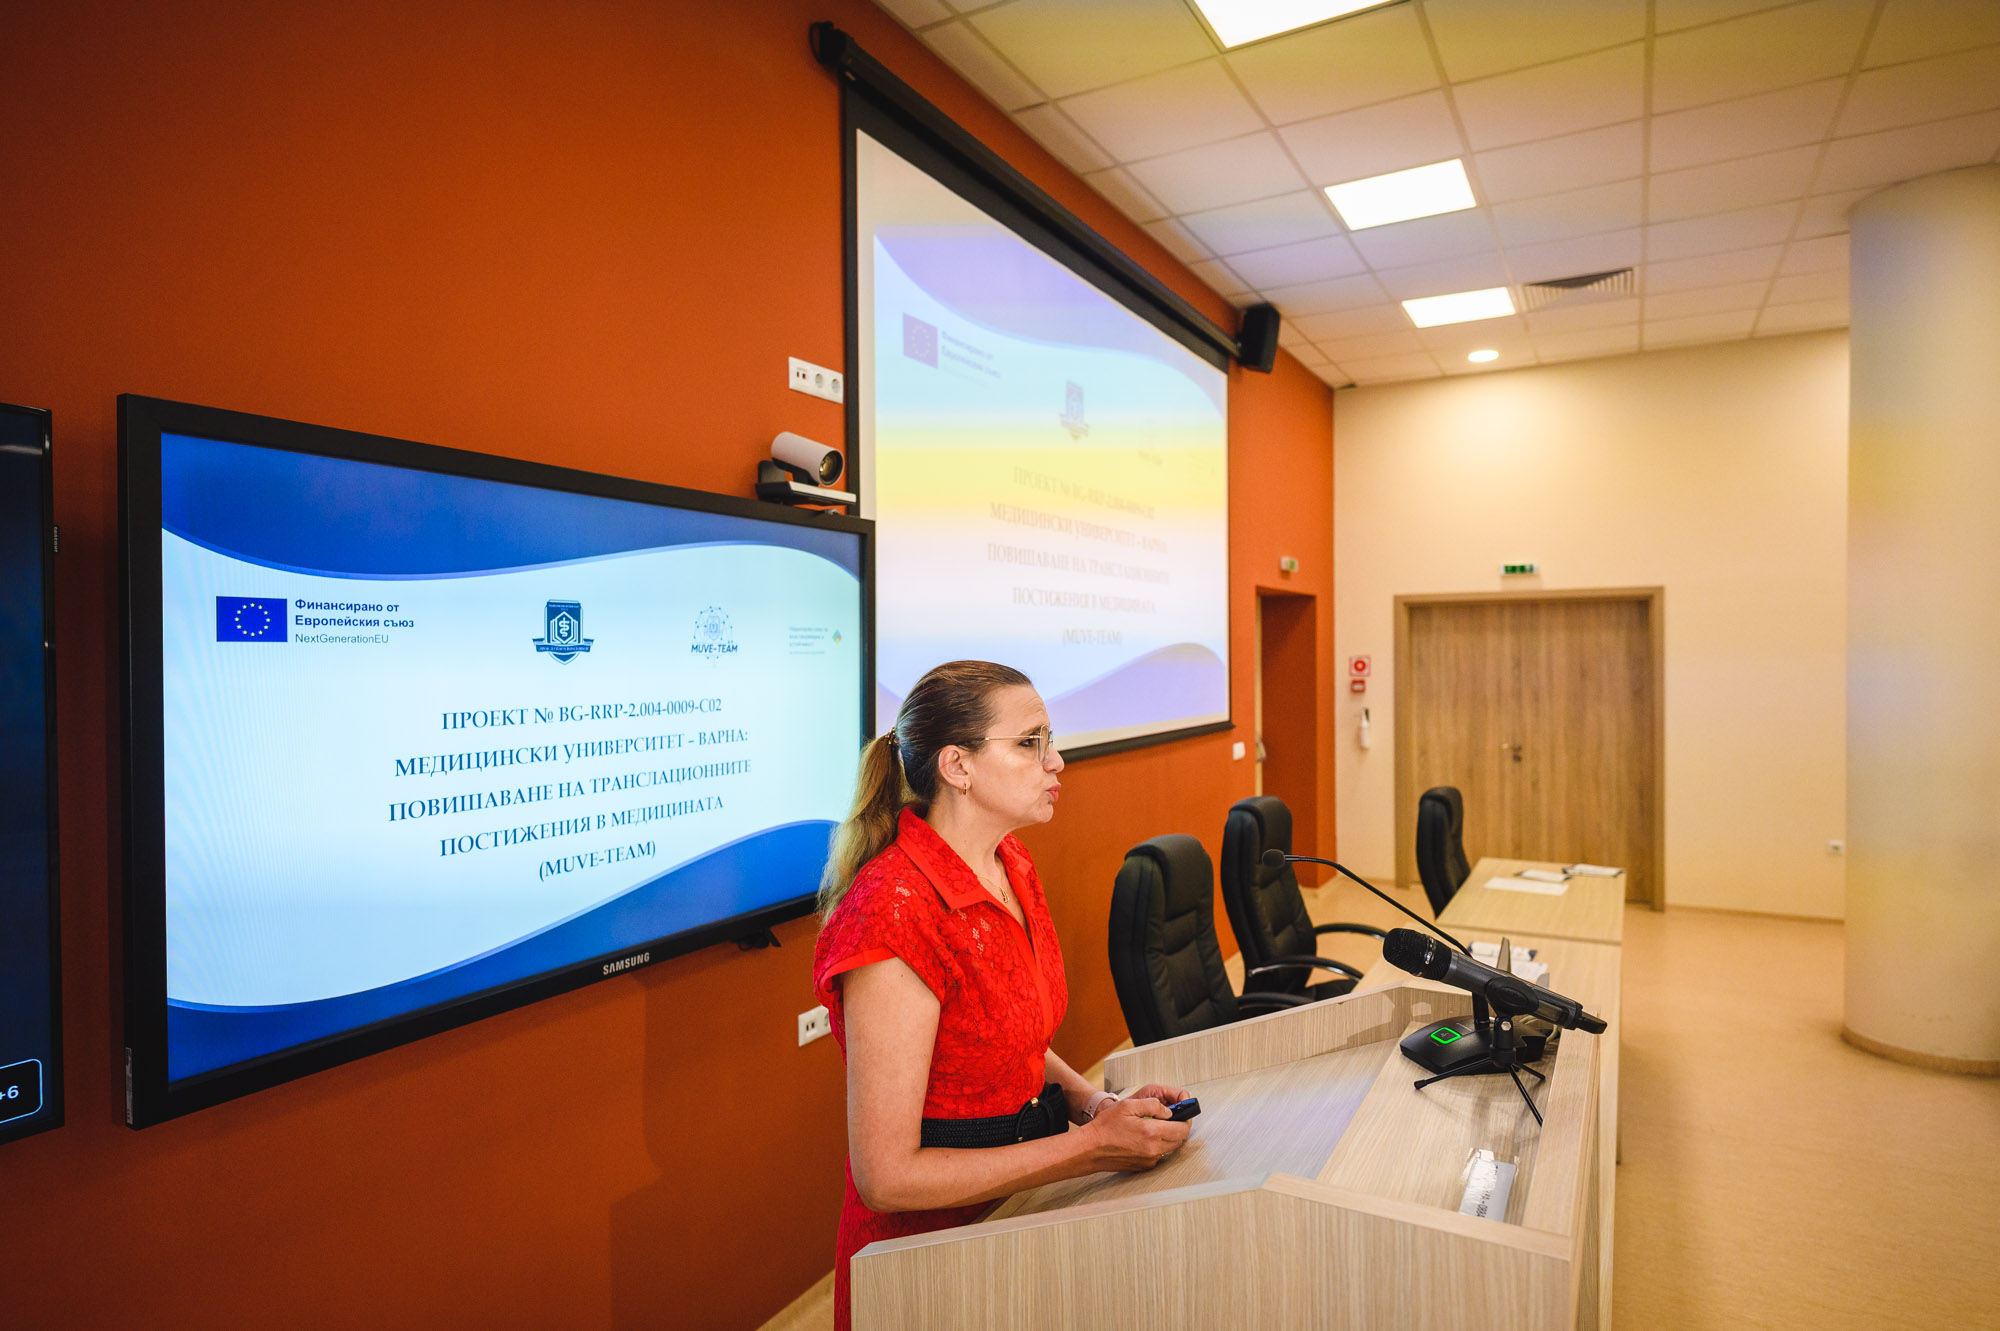  Медицински университет - Варна: Повишаване на транслационните постижения в медицината (MUVE-TEAM)